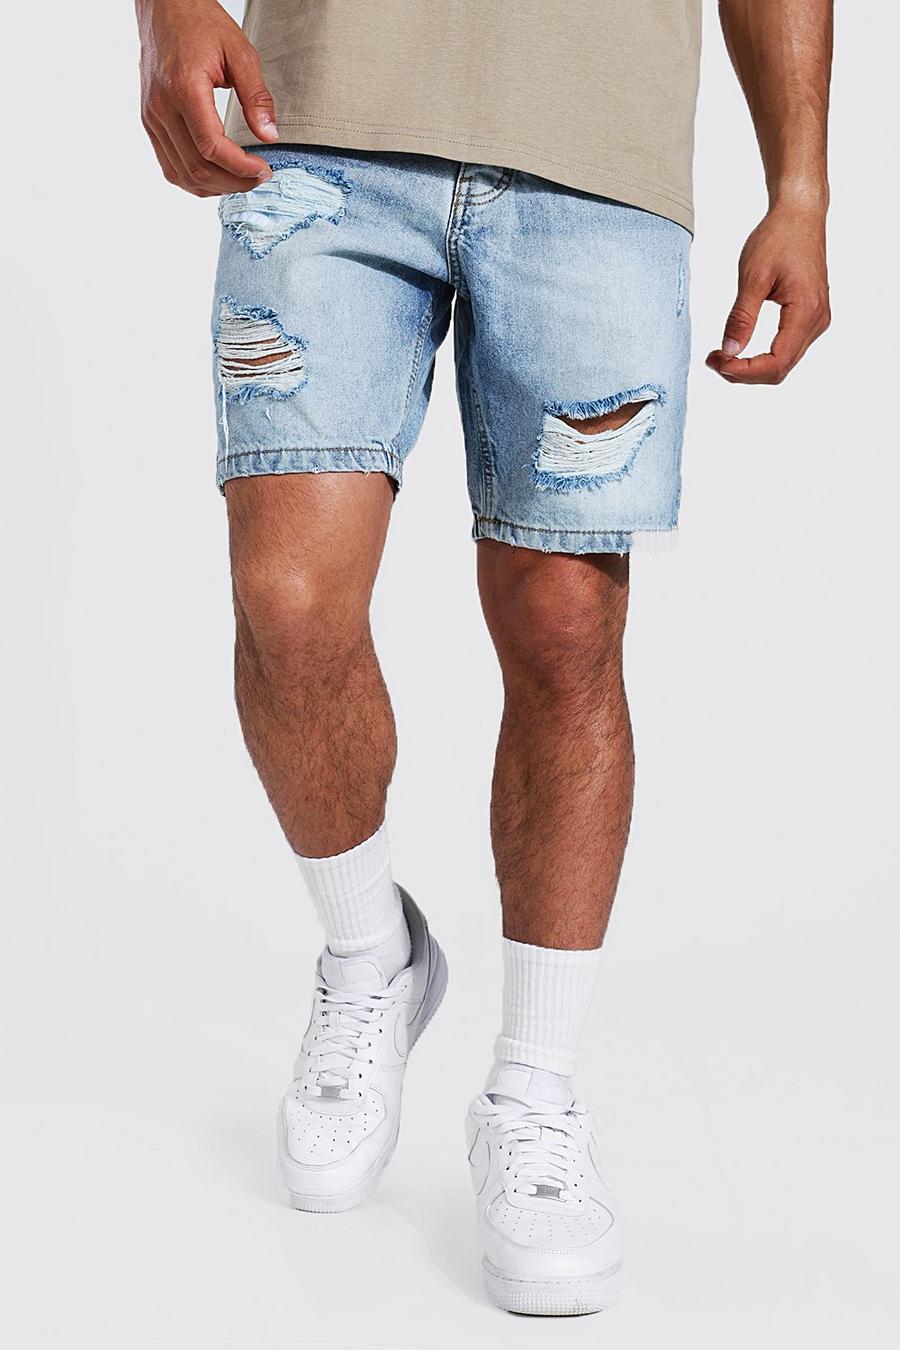 Pantalones cortos vaqueros sin tratar ajustados con varios desgarros, Light blue image number 1